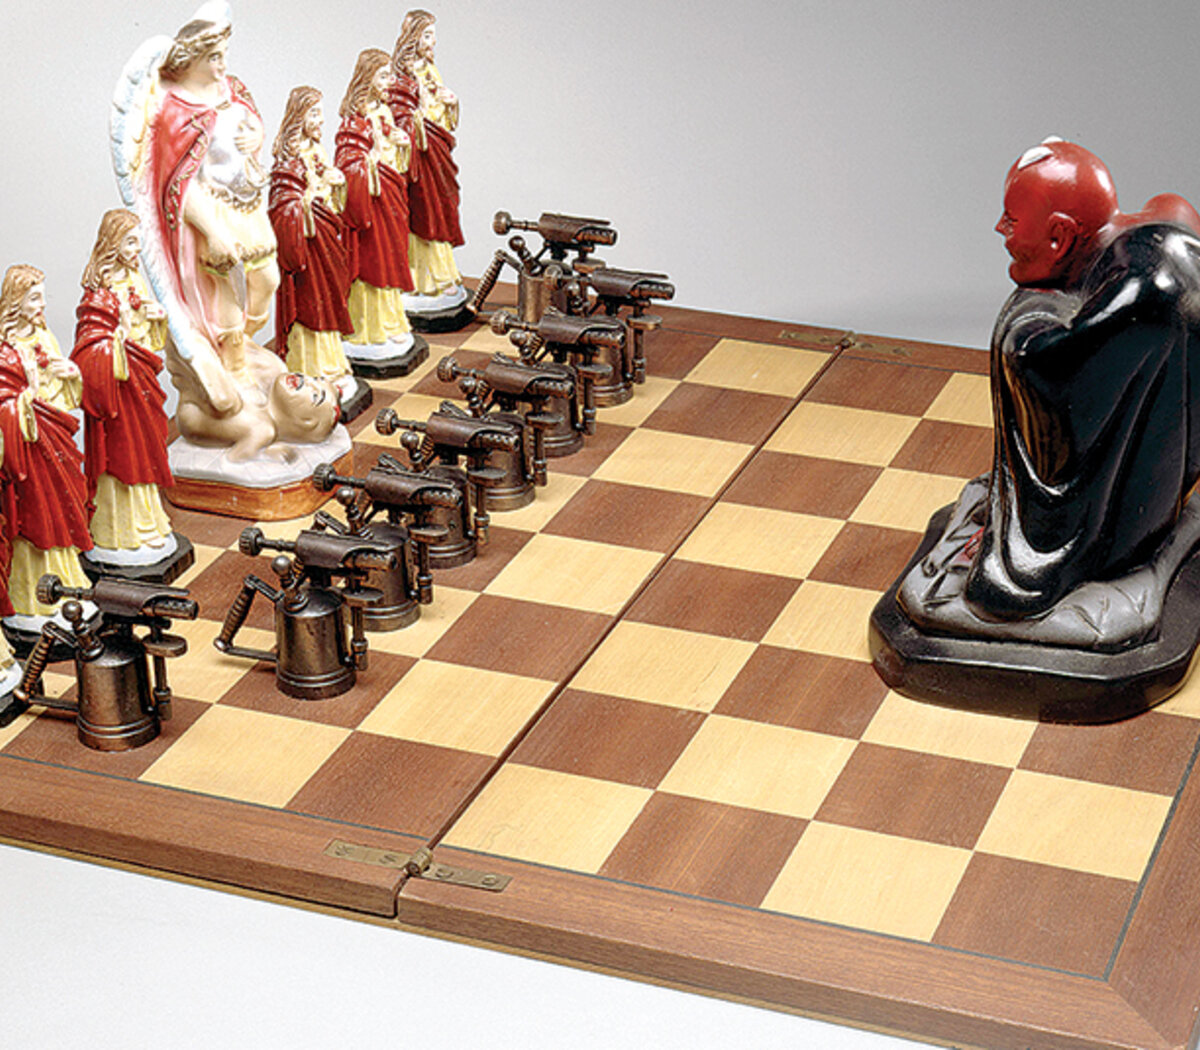 Libro de ajedrez Juegue la Najdorf de la defensa Siciliana